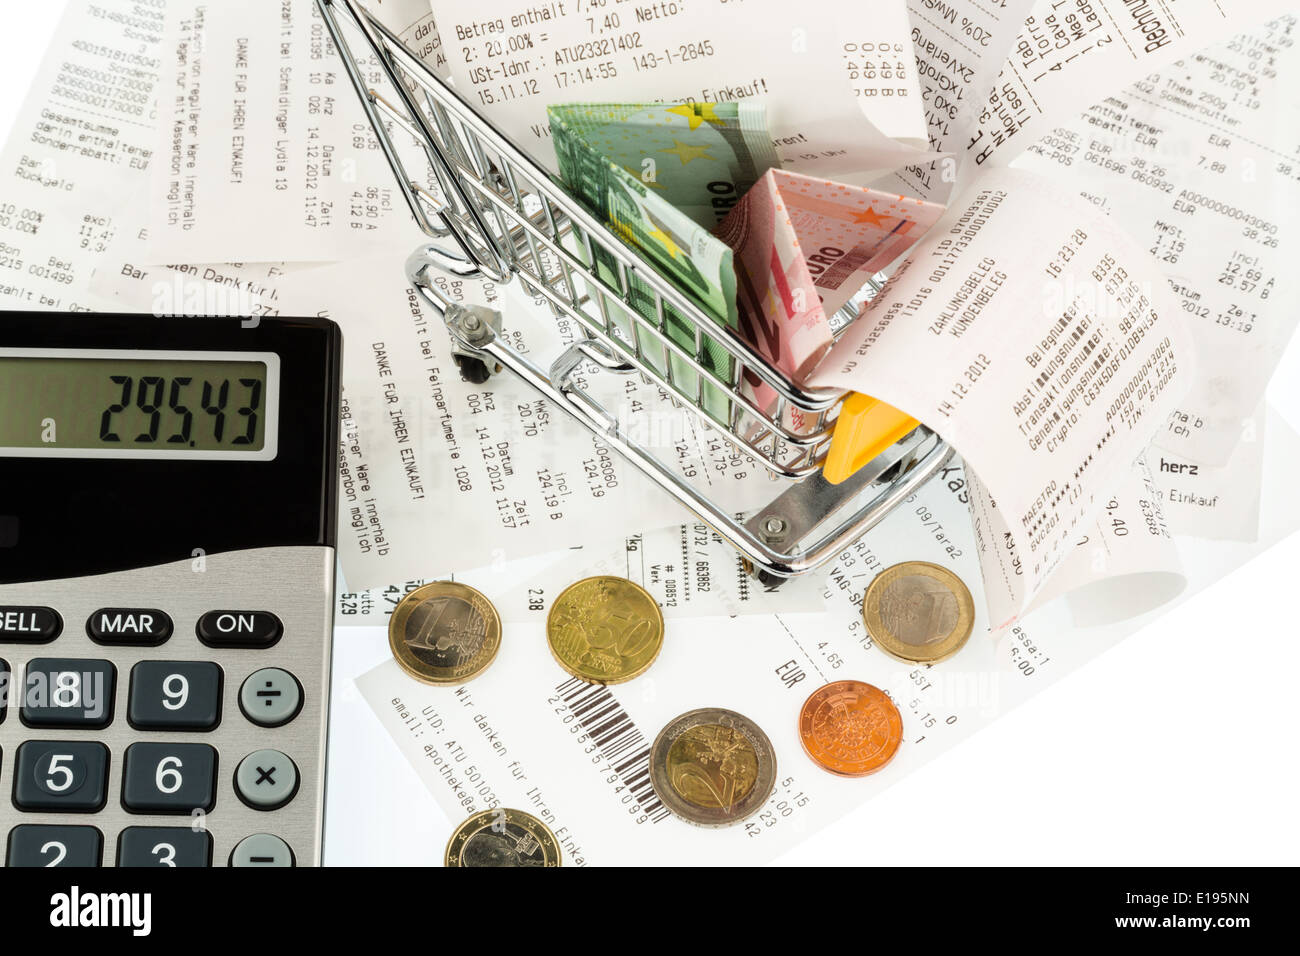 Einkaufswagen, Geldscheine und Kassenbons, Symbolfoto f¸r Kaufkraft, Konsum und Inflation Stock Photo